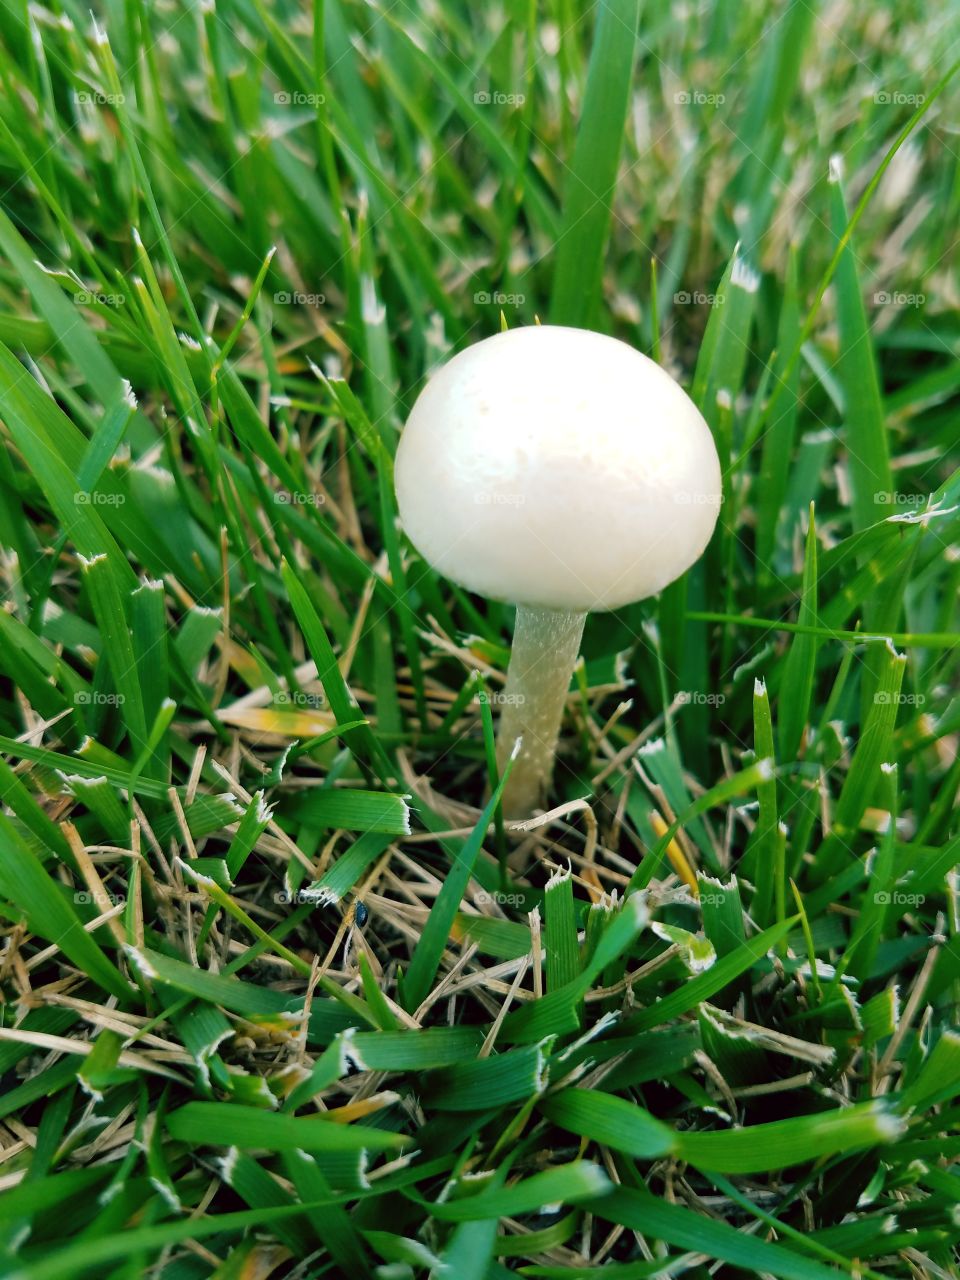 mushroom and grass